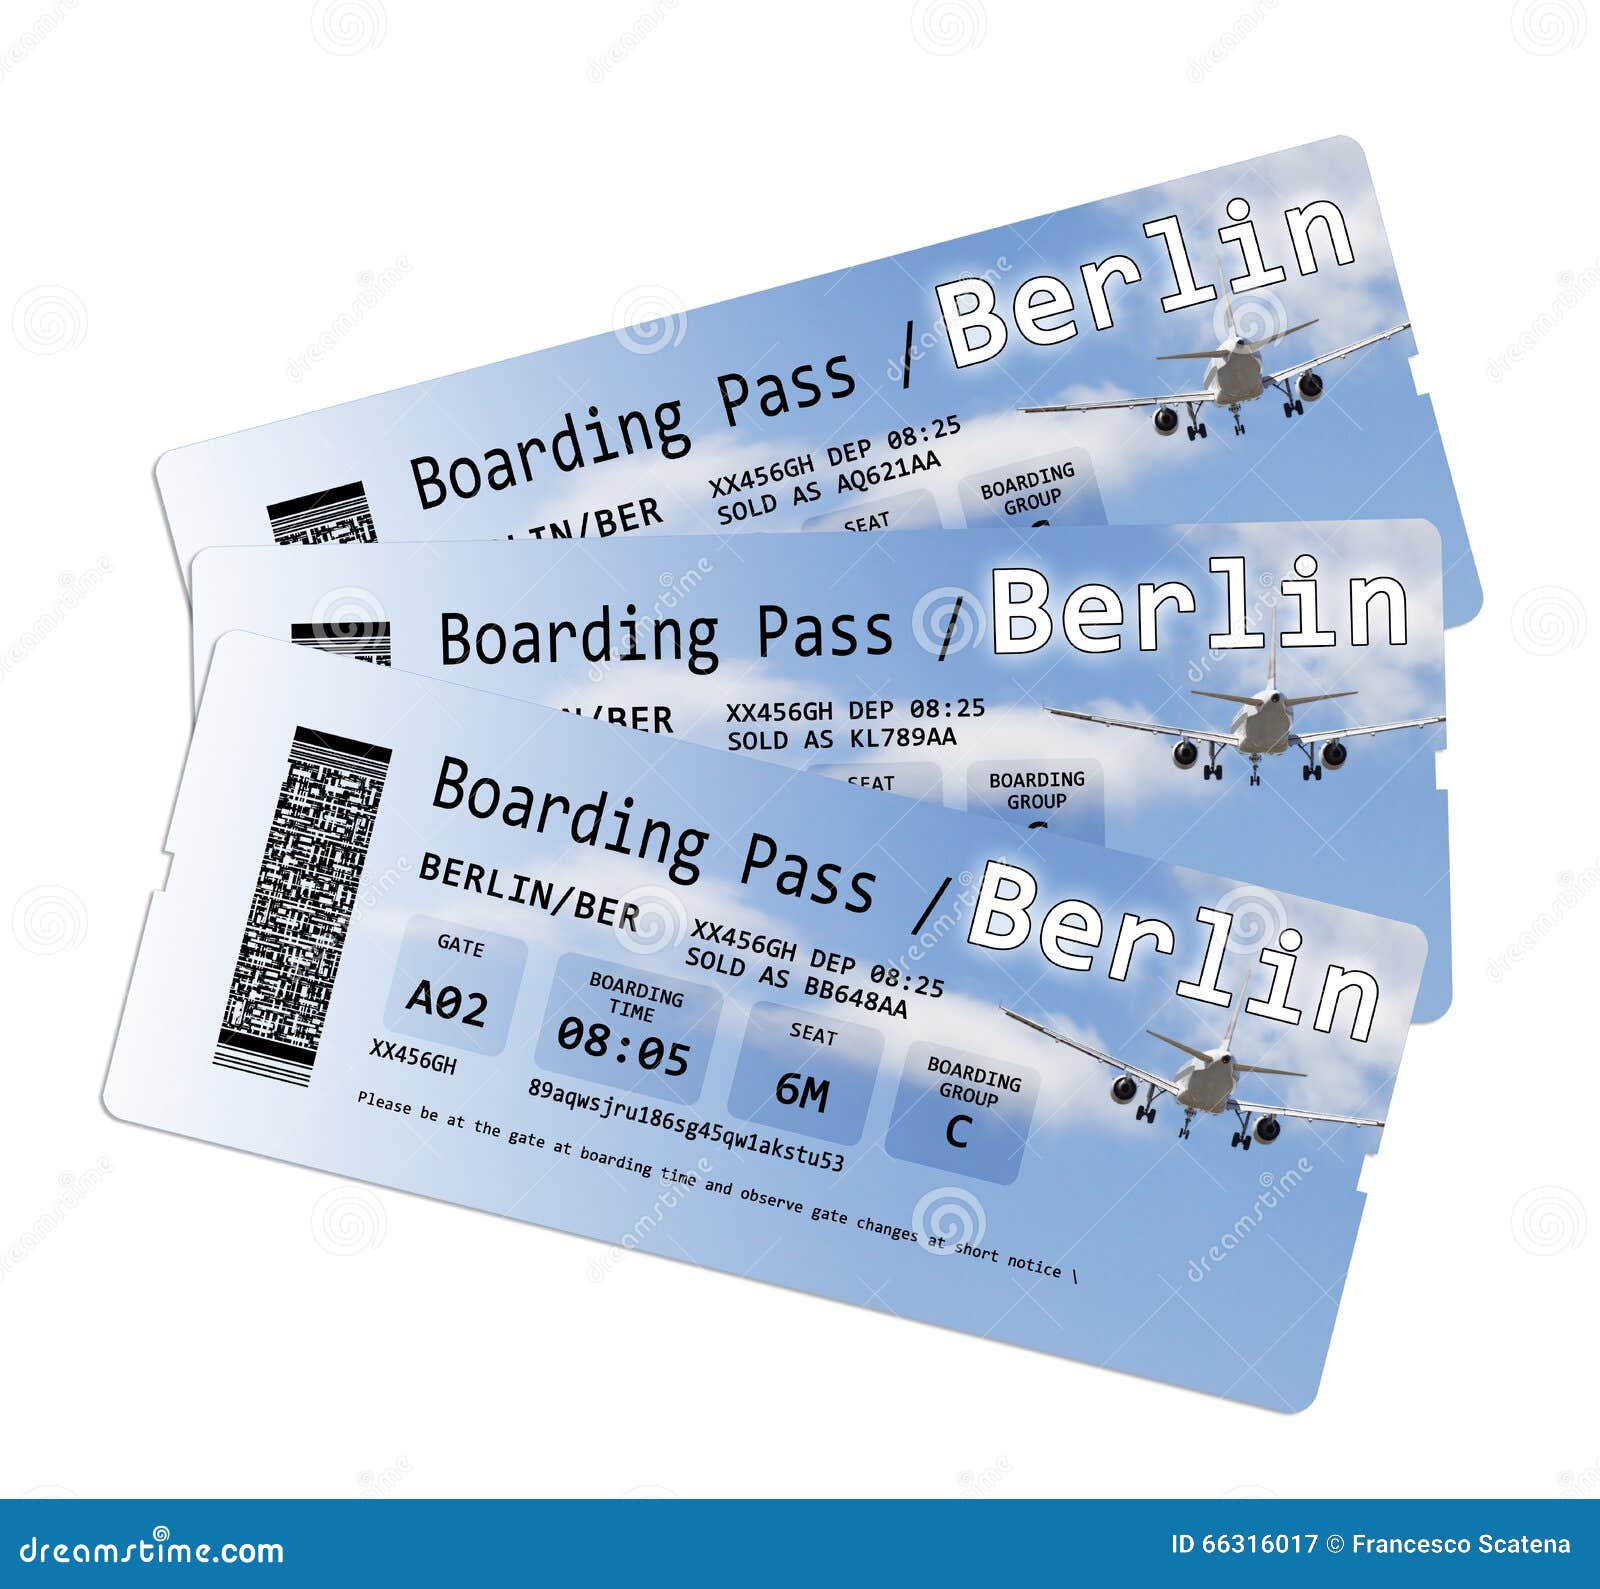 Presunción Bibliografía Lugar de la noche Airline Boarding Pass Tickets To Berlin Stock Image - Image of flying,  boarding: 66316017